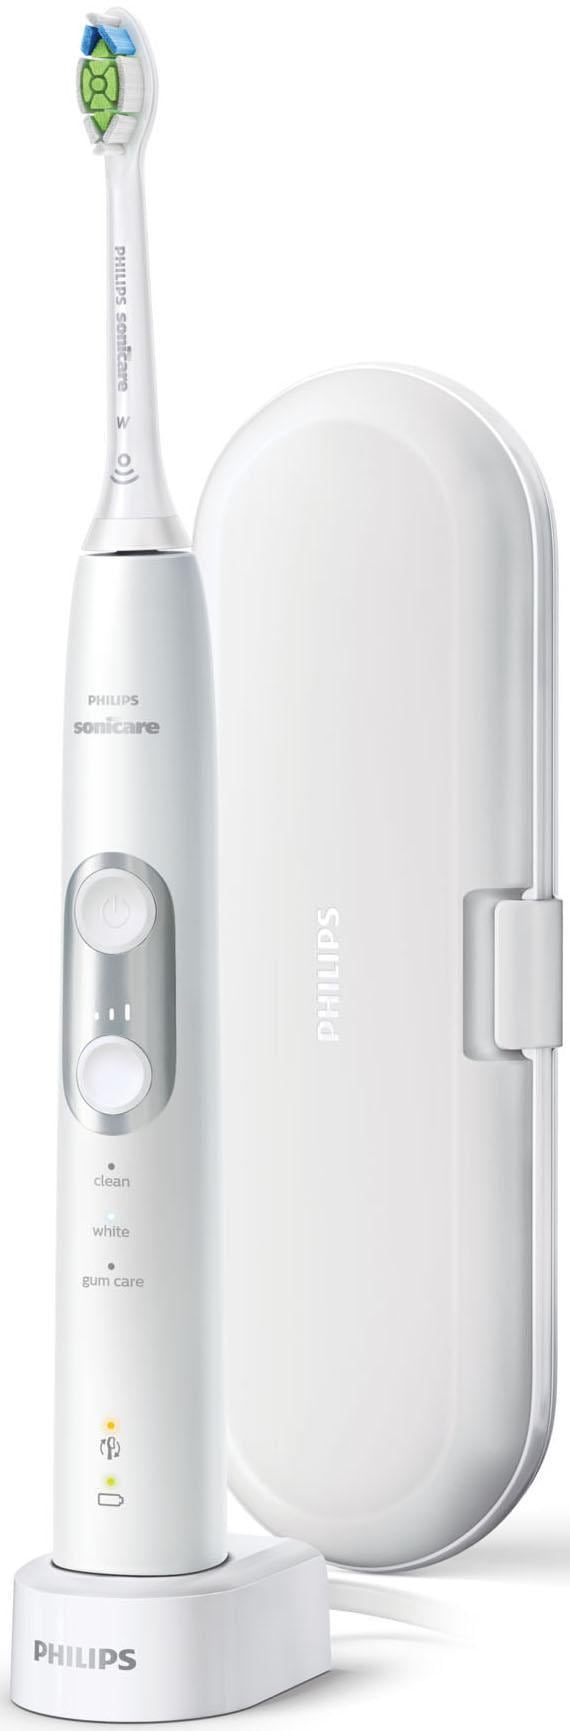 Philips Sonicare Elektrische Zahnbürste »HX6877/28«, 1 St. Aufsteckbürsten, ProtectiveClean 6100, Schallzahnbürste, mit 3 Putzprogrammen